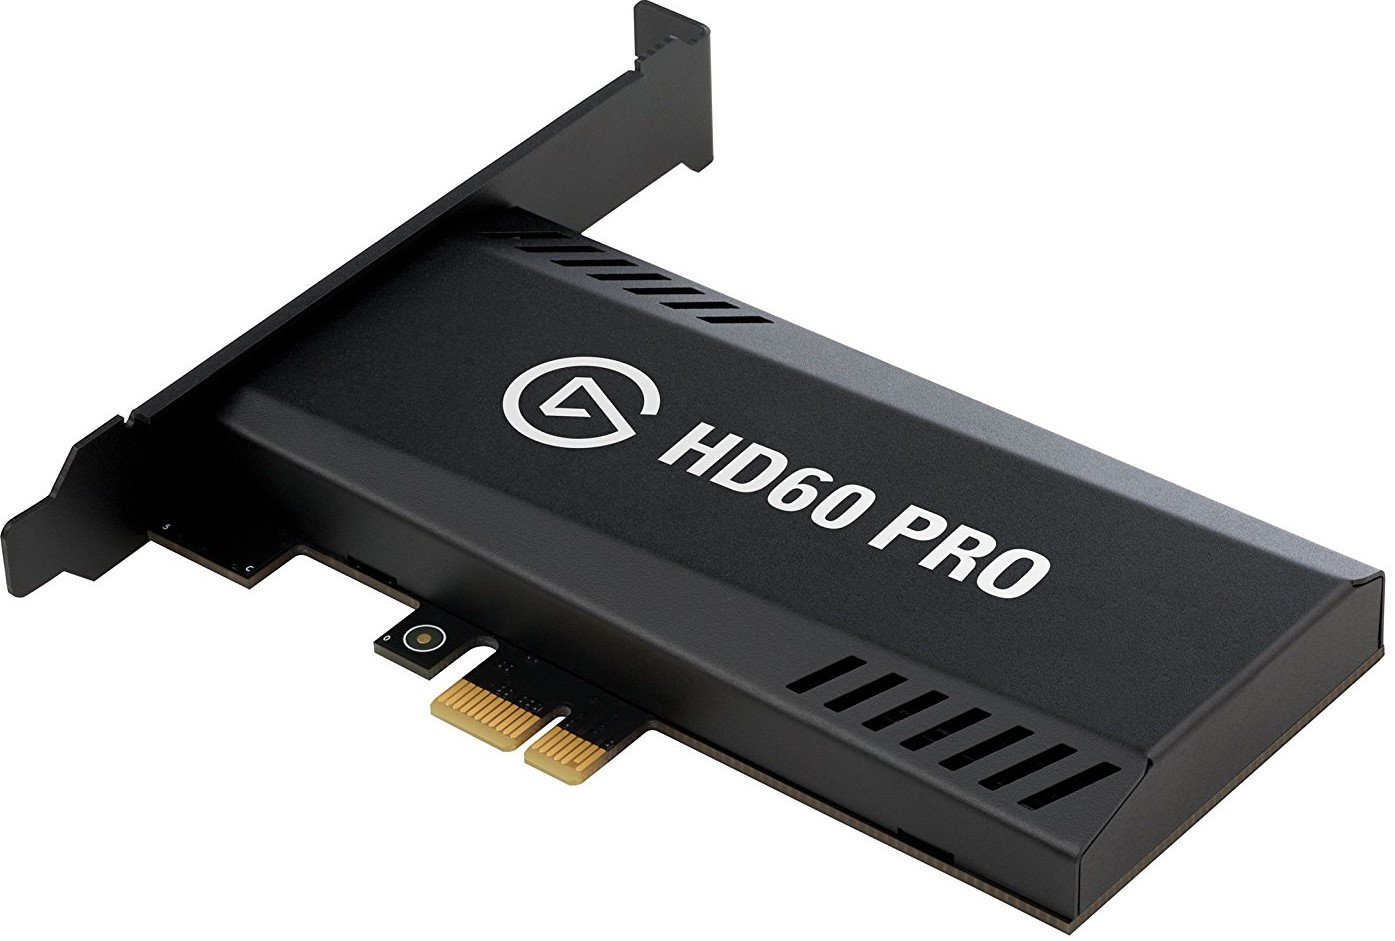 HD60 Pro